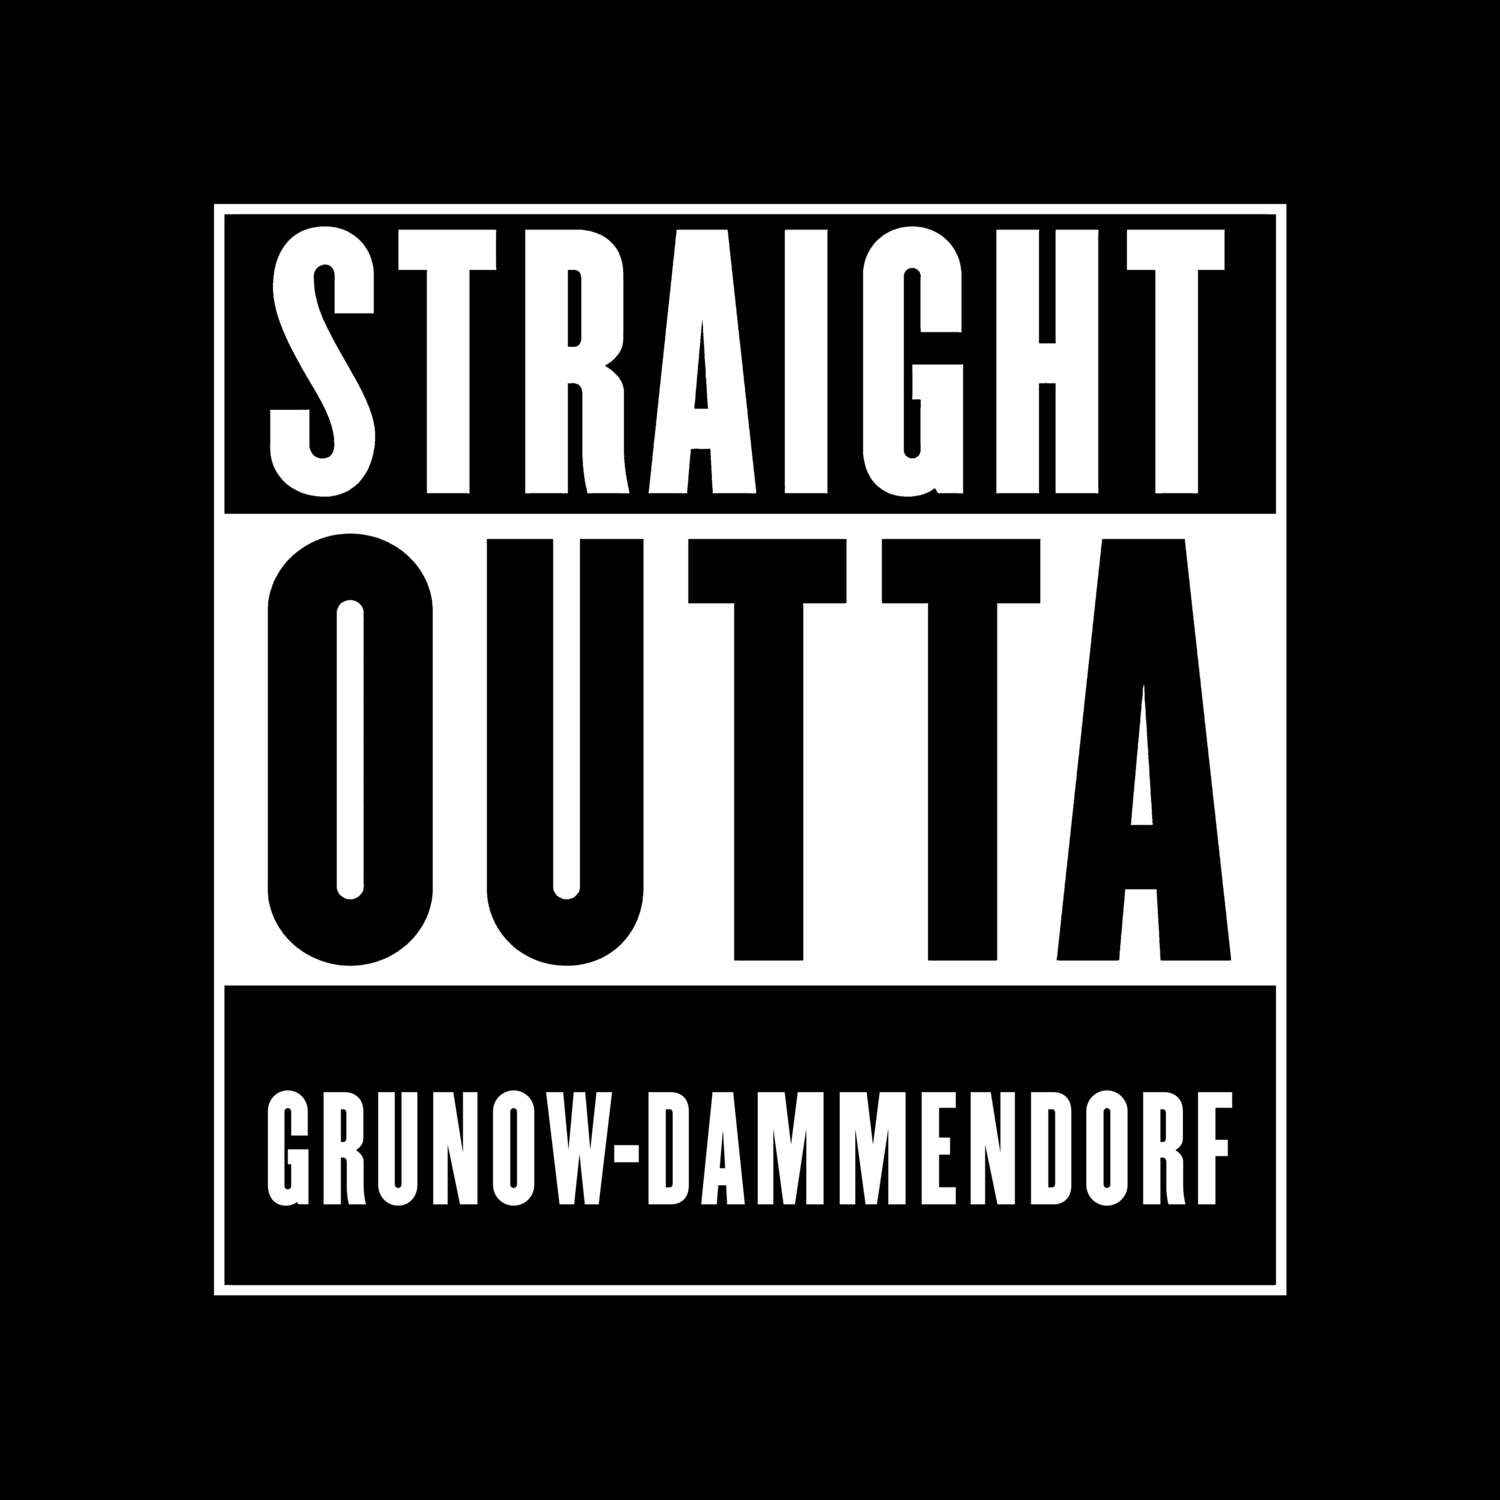 Grunow-Dammendorf T-Shirt »Straight Outta«